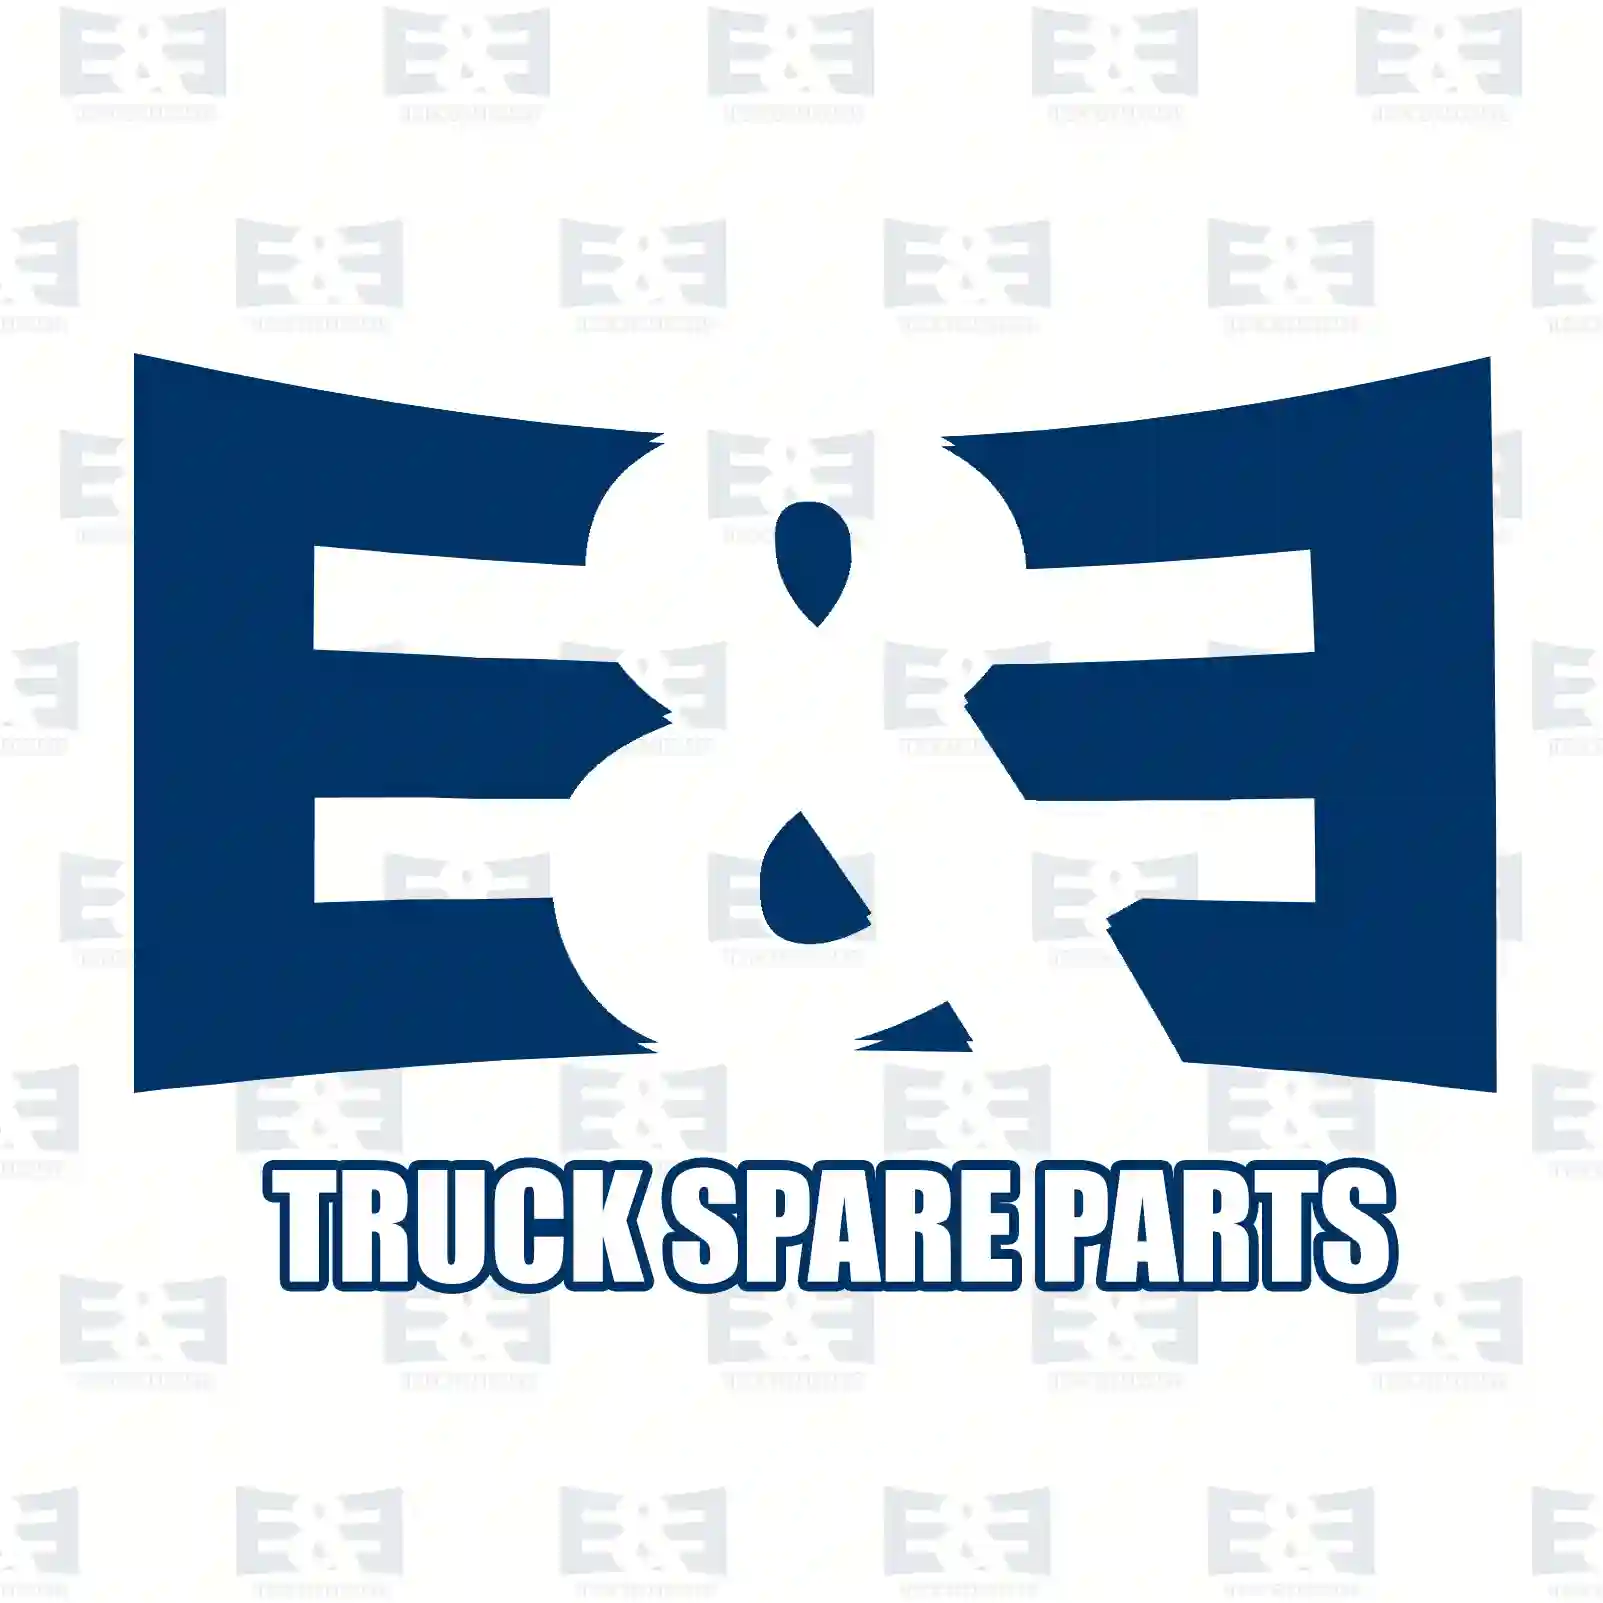 Multiribbed belt, 2E2203847, 4668444AC, 4668444AD, 4668444AE, K04668444AC, K04668444AD, 51968200205, 51968200269 ||  2E2203847 E&E Truck Spare Parts | Truck Spare Parts, Auotomotive Spare Parts Multiribbed belt, 2E2203847, 4668444AC, 4668444AD, 4668444AE, K04668444AC, K04668444AD, 51968200205, 51968200269 ||  2E2203847 E&E Truck Spare Parts | Truck Spare Parts, Auotomotive Spare Parts